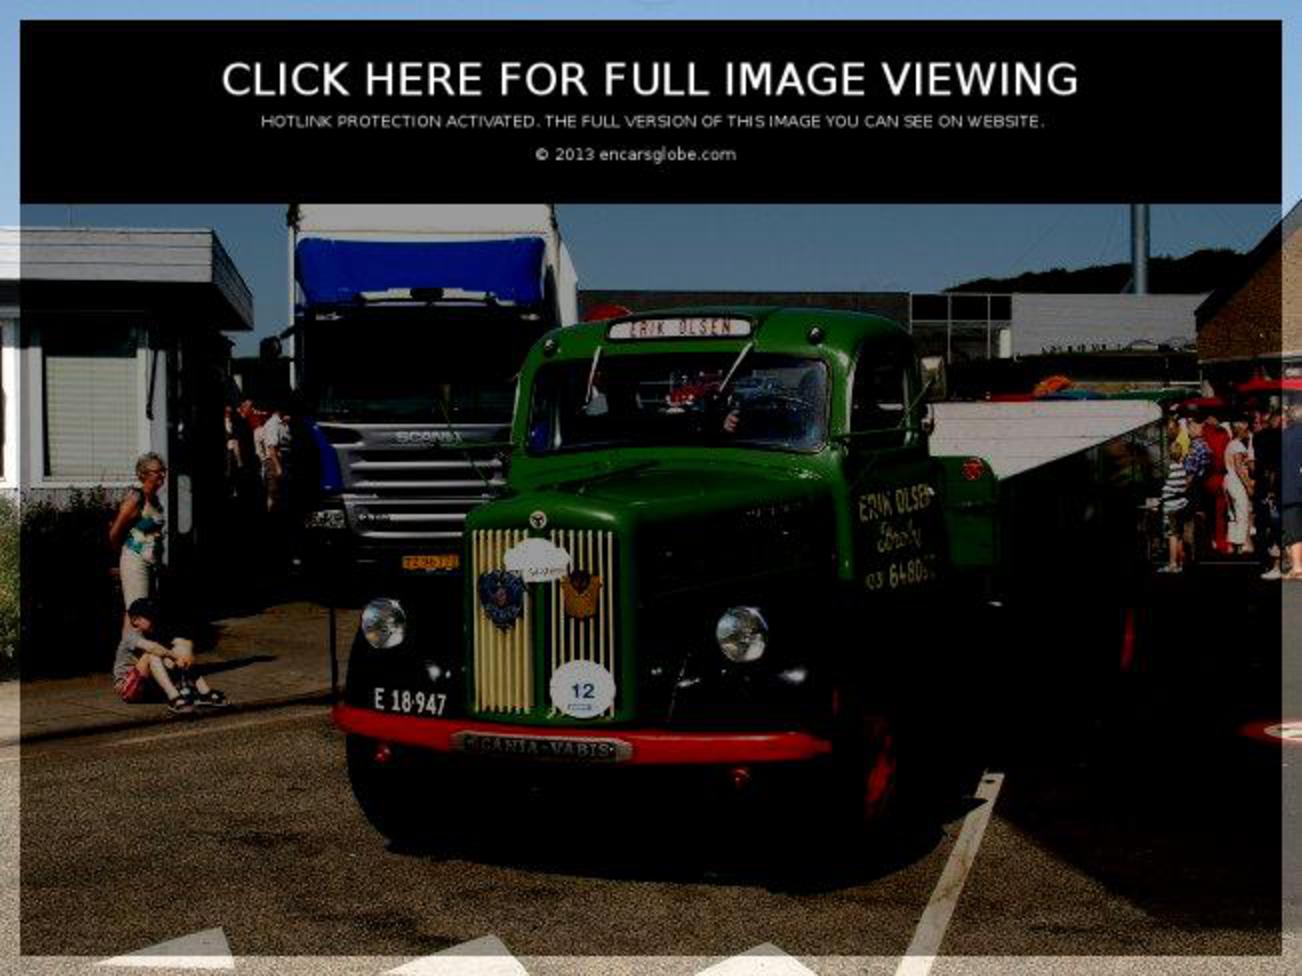 Scania-Vabis LS 111 S 42: Galerie de photos, informations complètes...